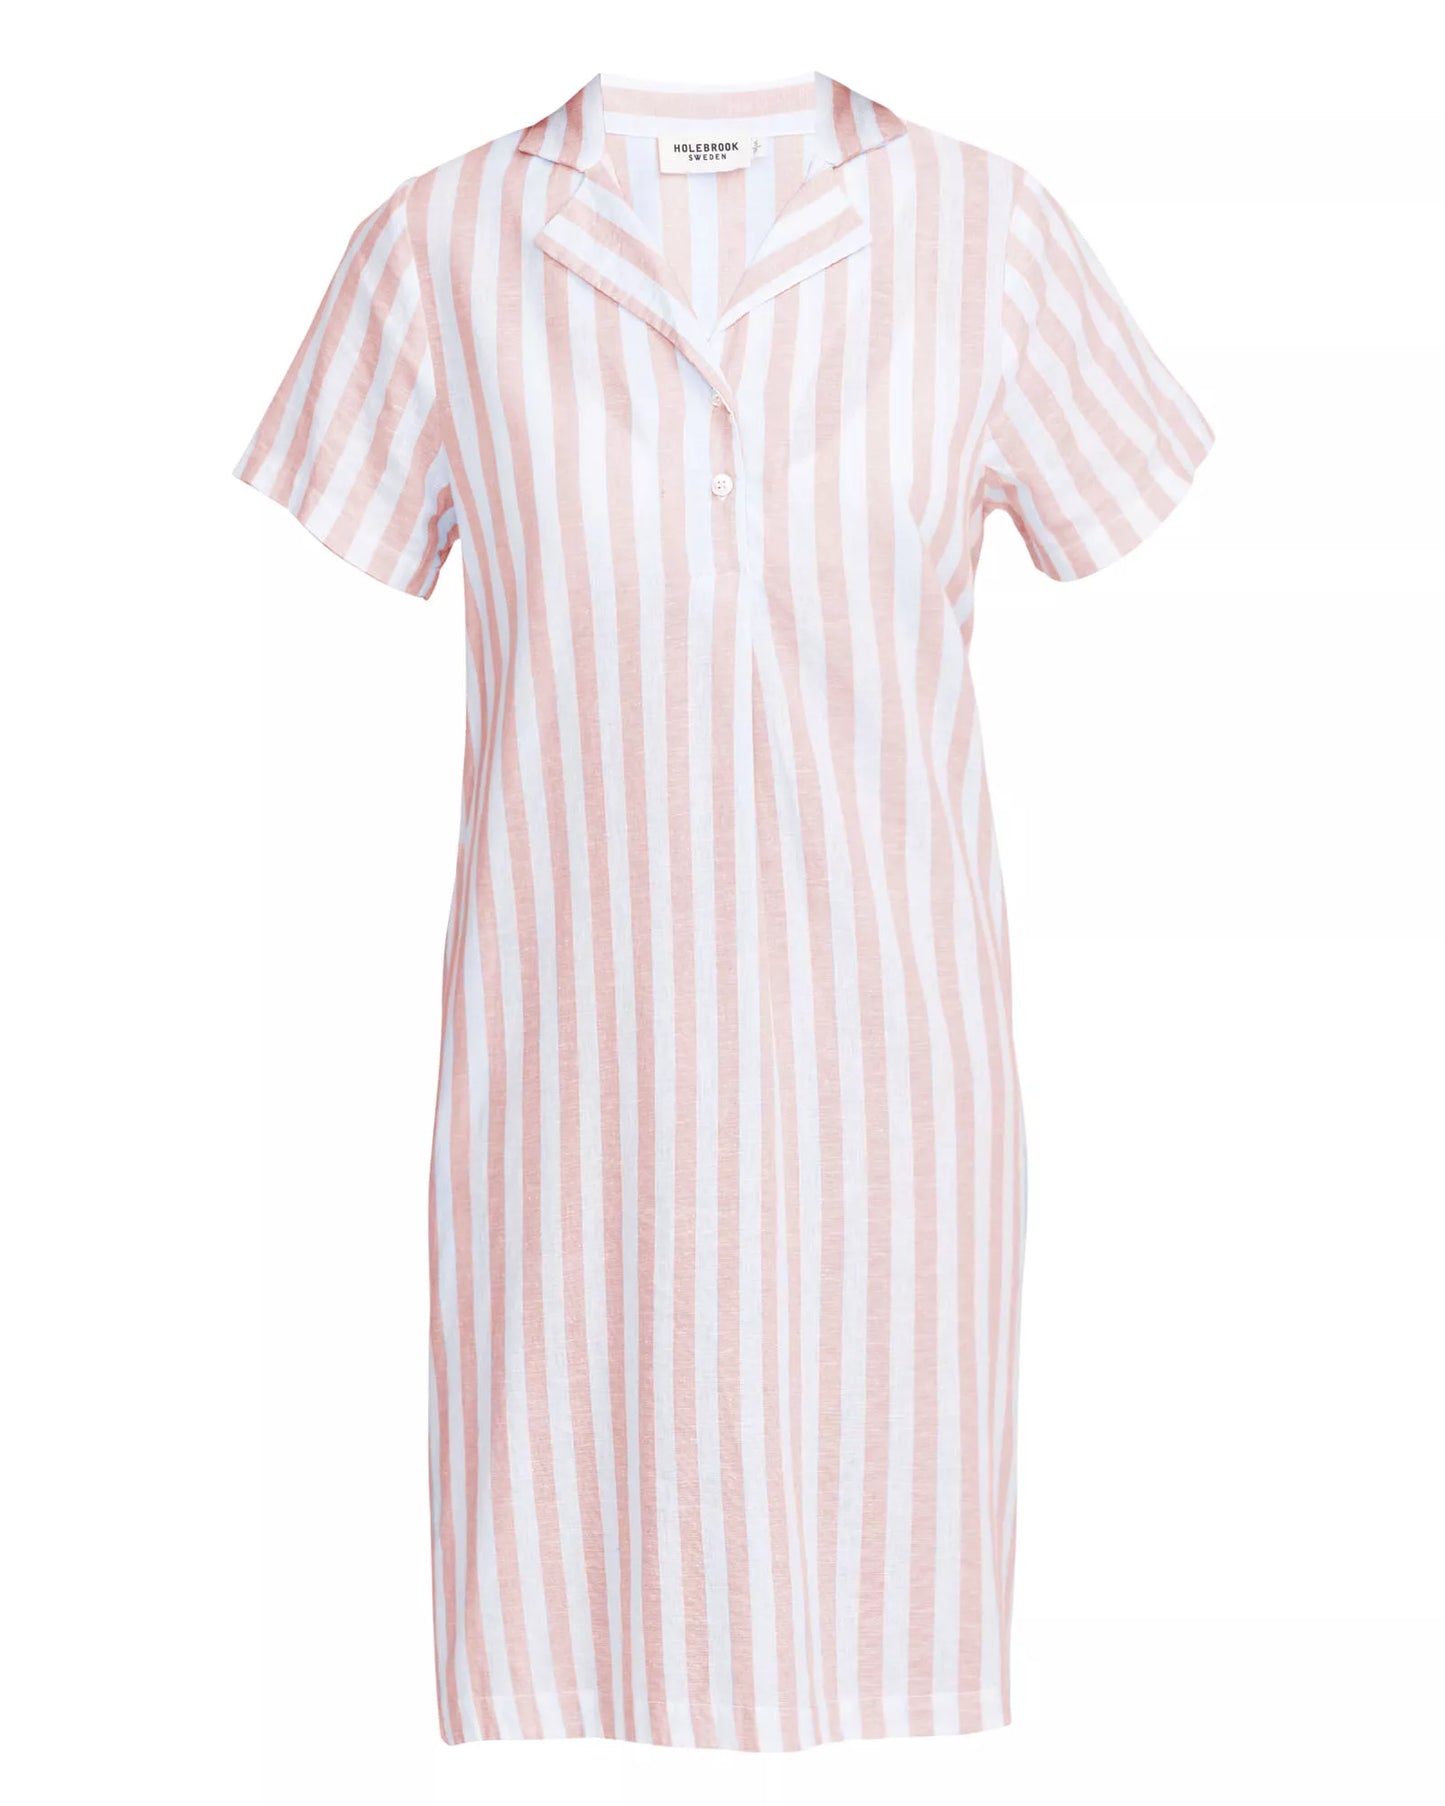 Holebrook Marina Tunic Dress - Pale Apricot/White